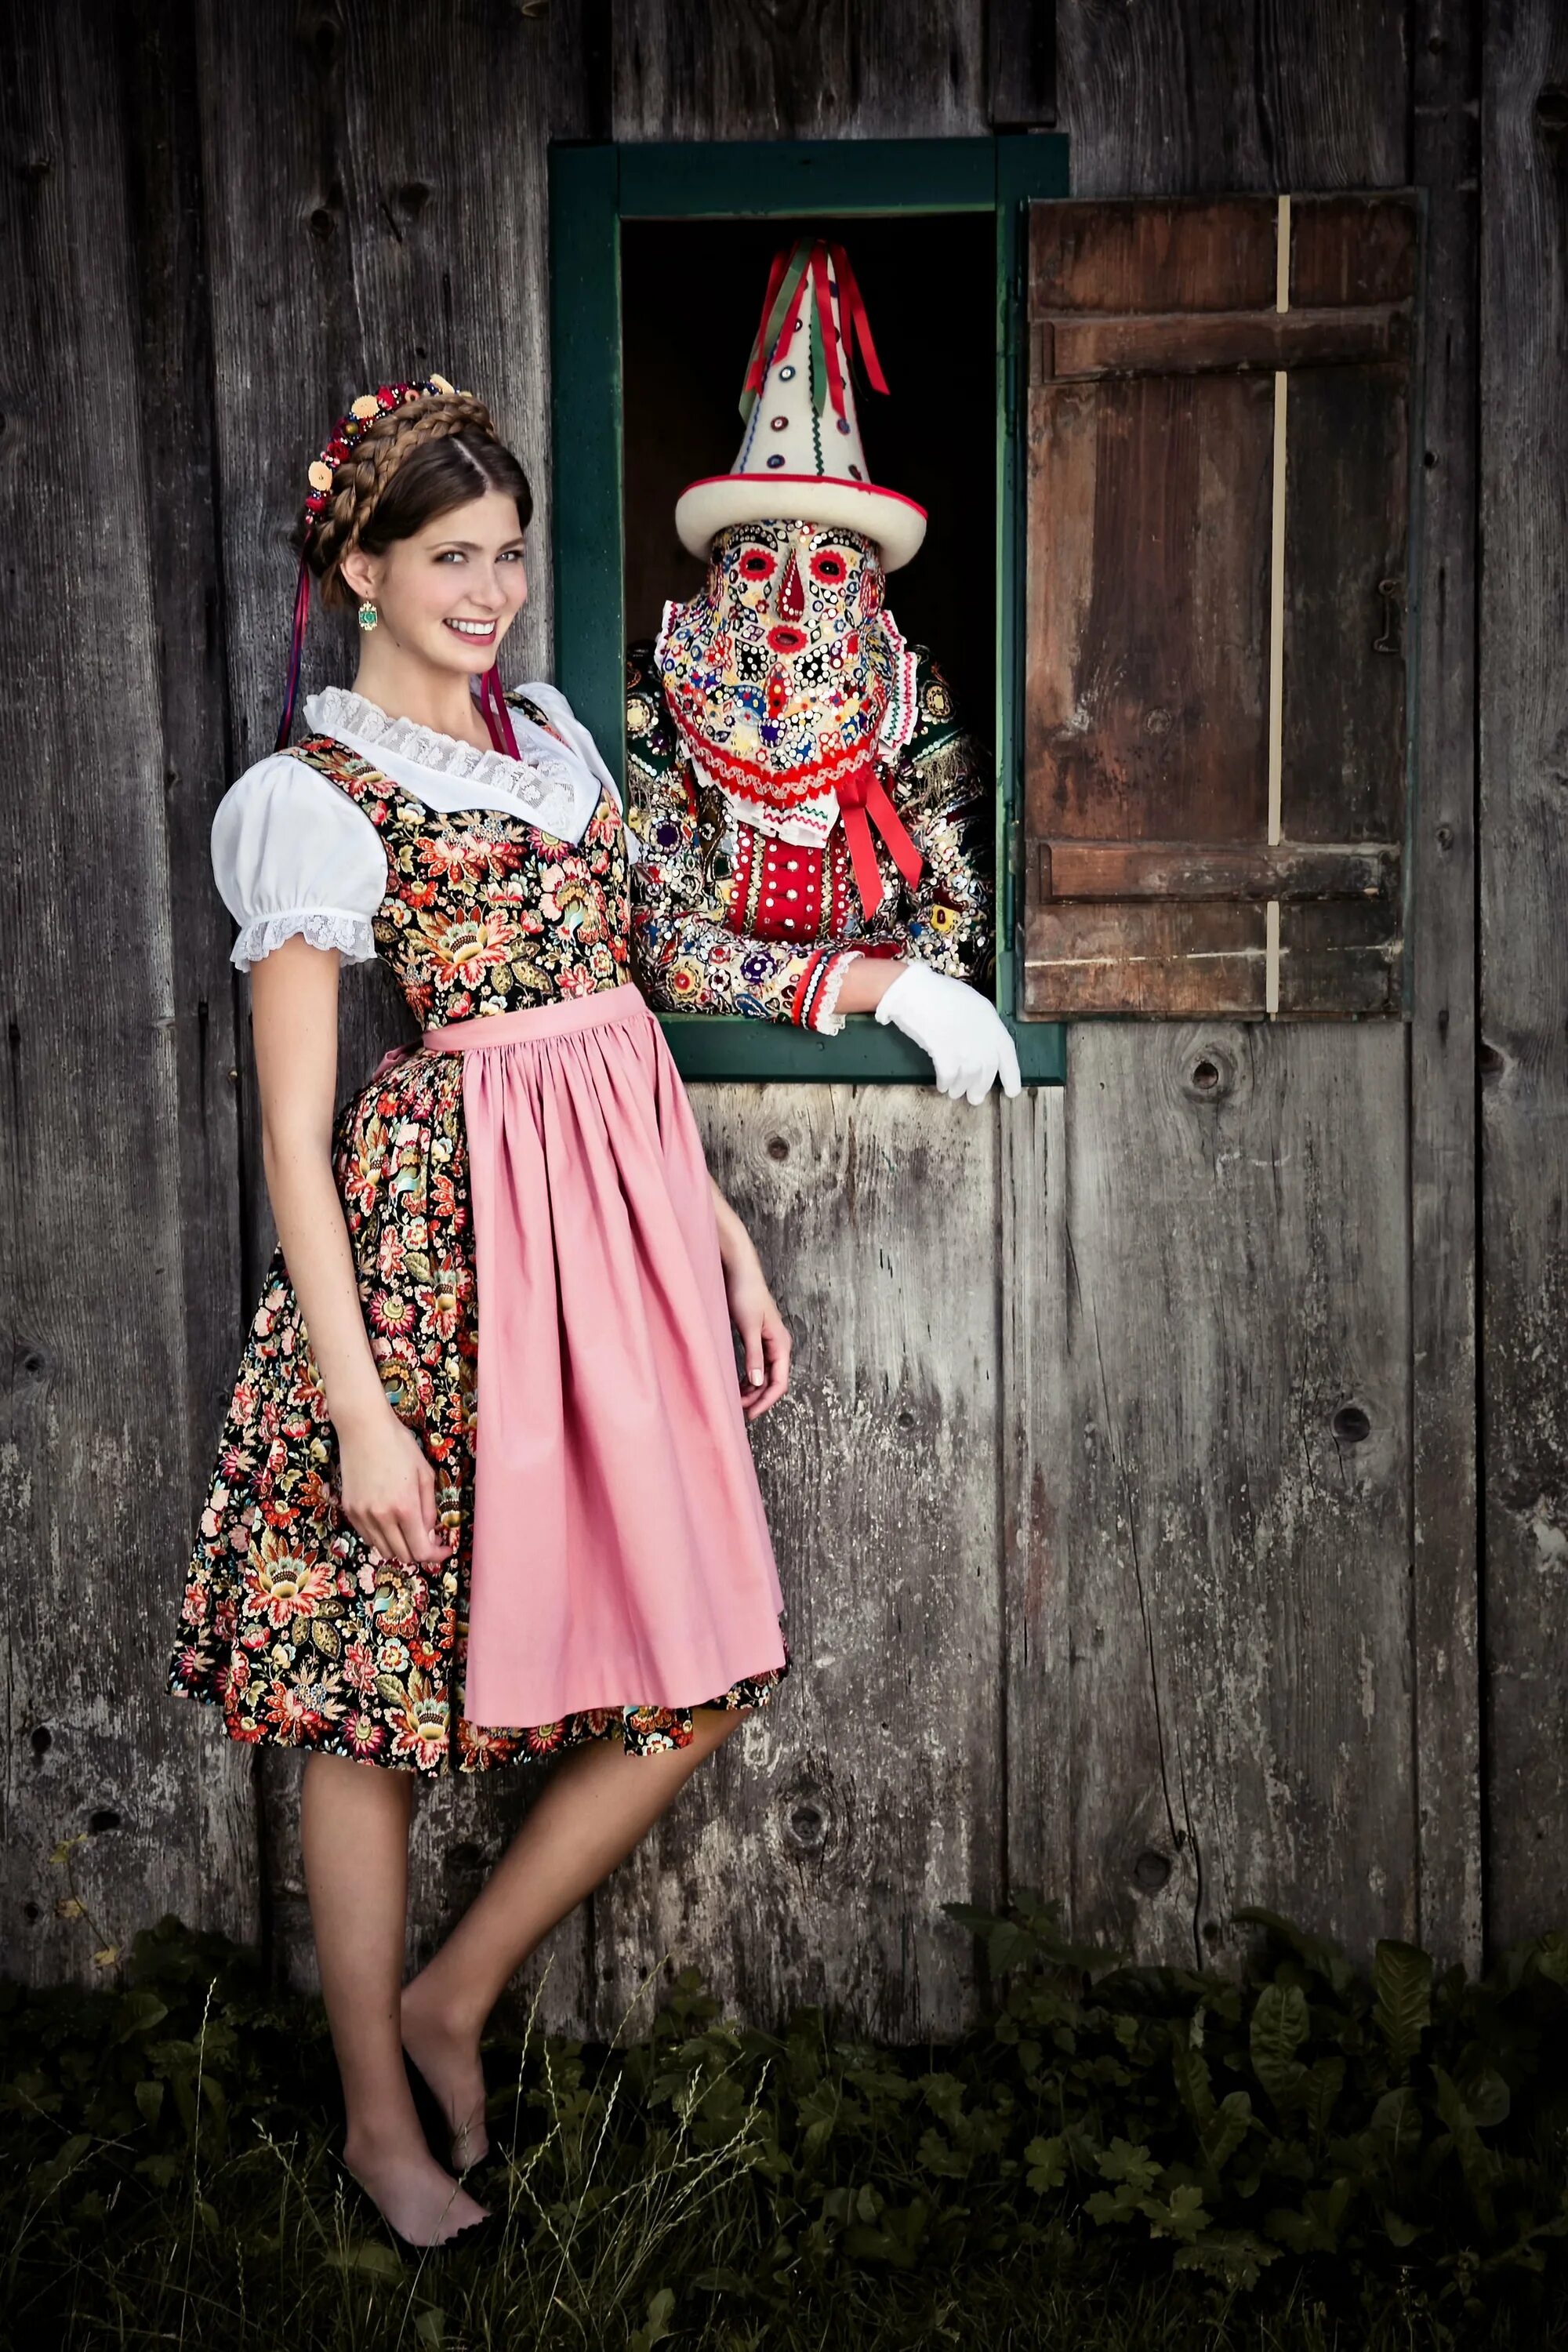 Деревенское платье. Lena Hoschek_tradition. Деревенский стиль в одежде. Платье для девочки в деревенском стиле. Костюм в деревенском стиле.